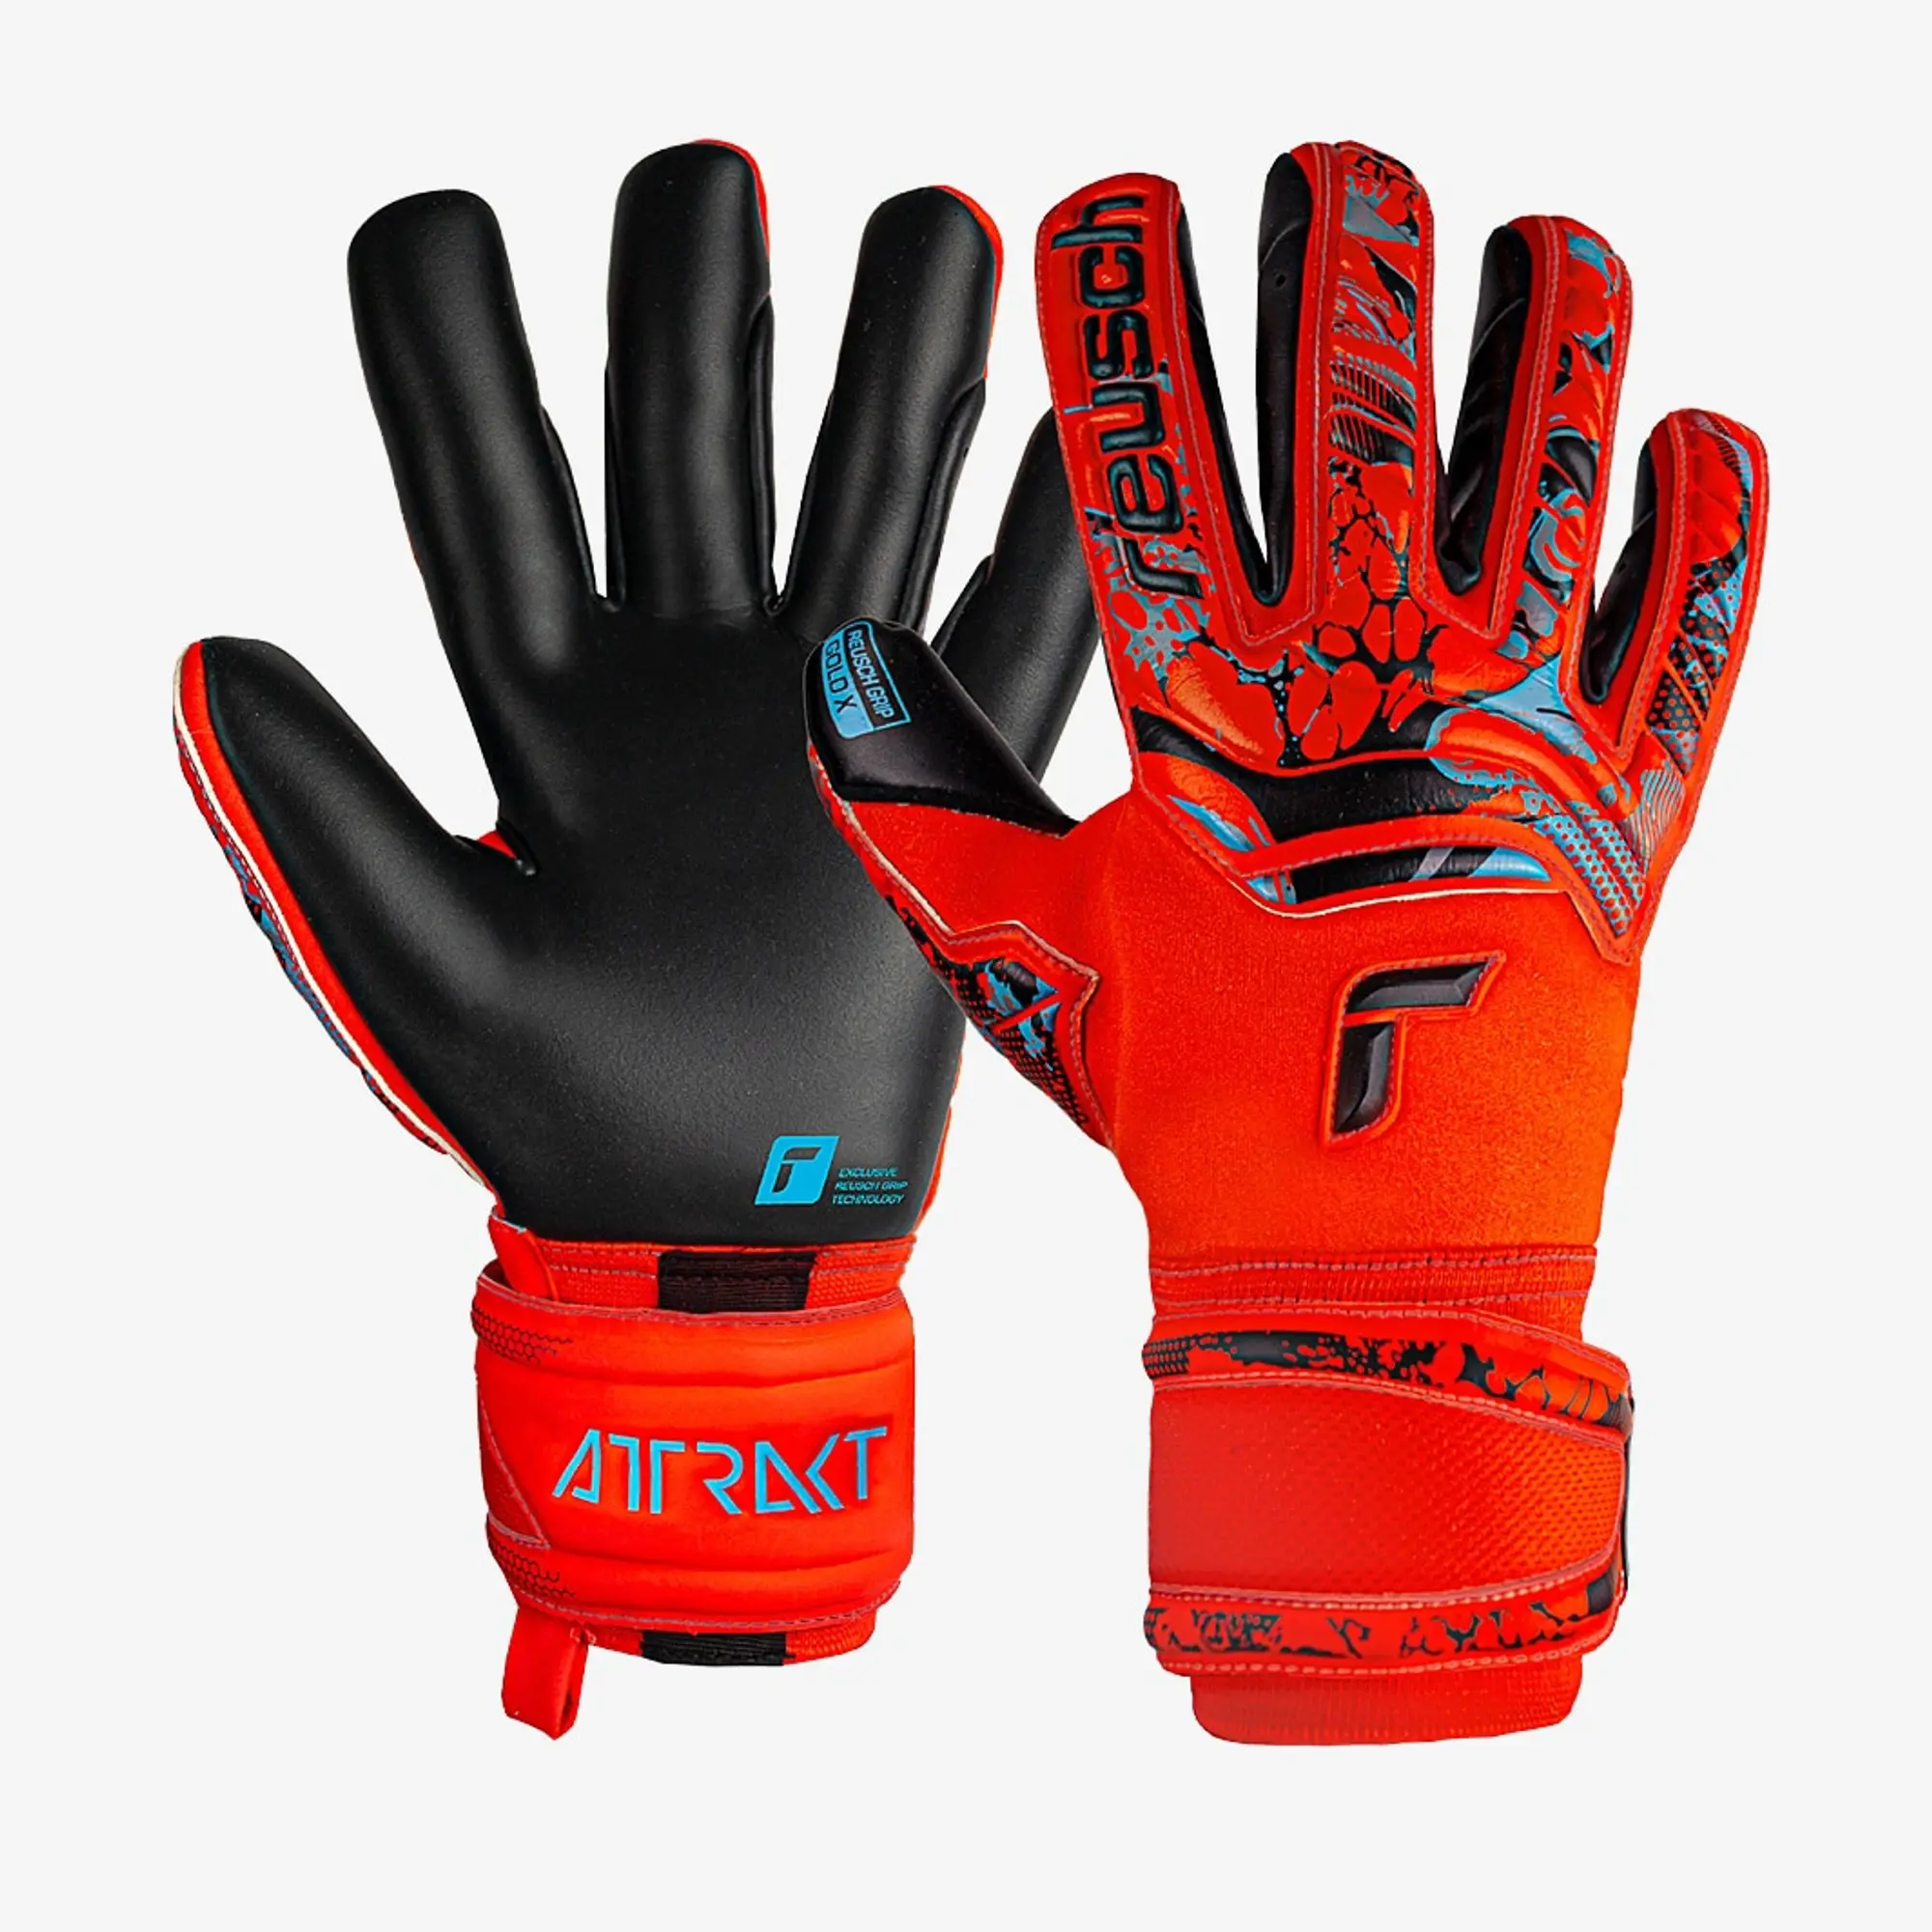 Reusch Attrakt Gold X Goalkeeper Gloves